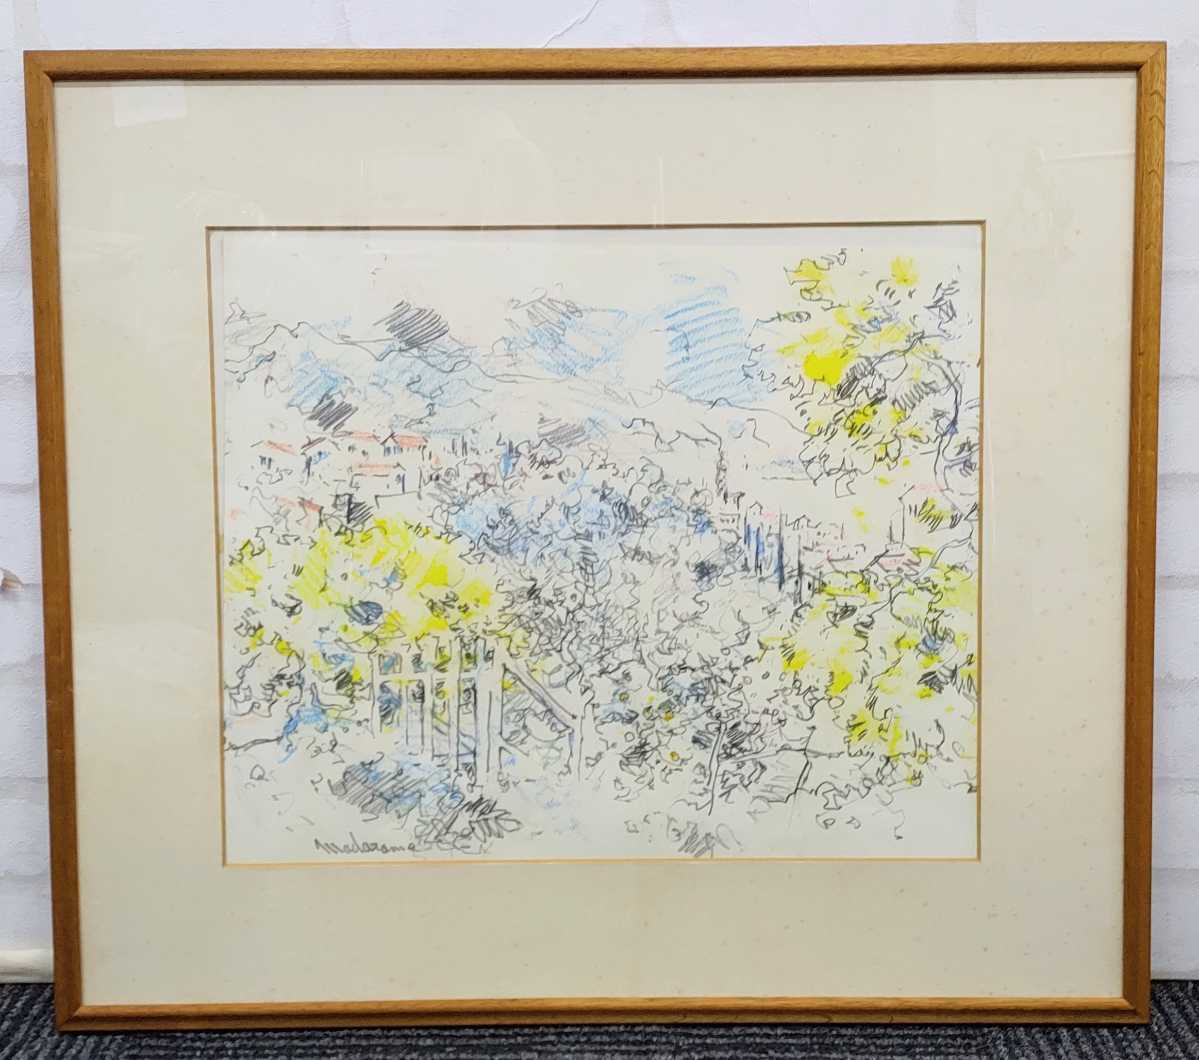 班目秀雄 ミモザの丘 鉛筆 パステル画 1968年 絵画 の商品詳細 | 日本